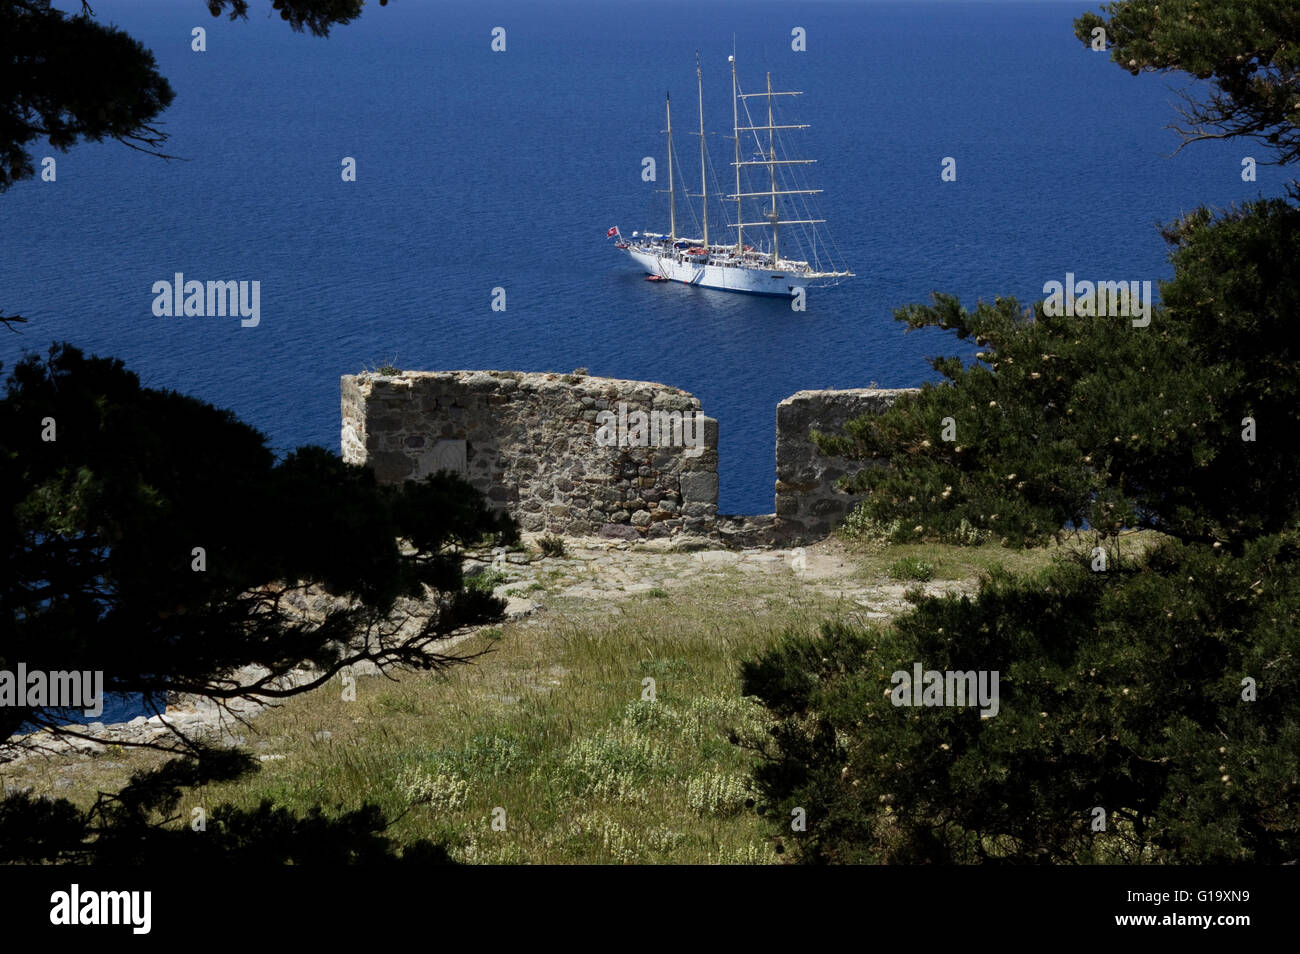 Luxuriöse Star Clipper-Schiff im Ägäischen Meer verankert außerhalb Myrina Hafen. Blick von der Burg. Limnos, Griechenland Stockfoto